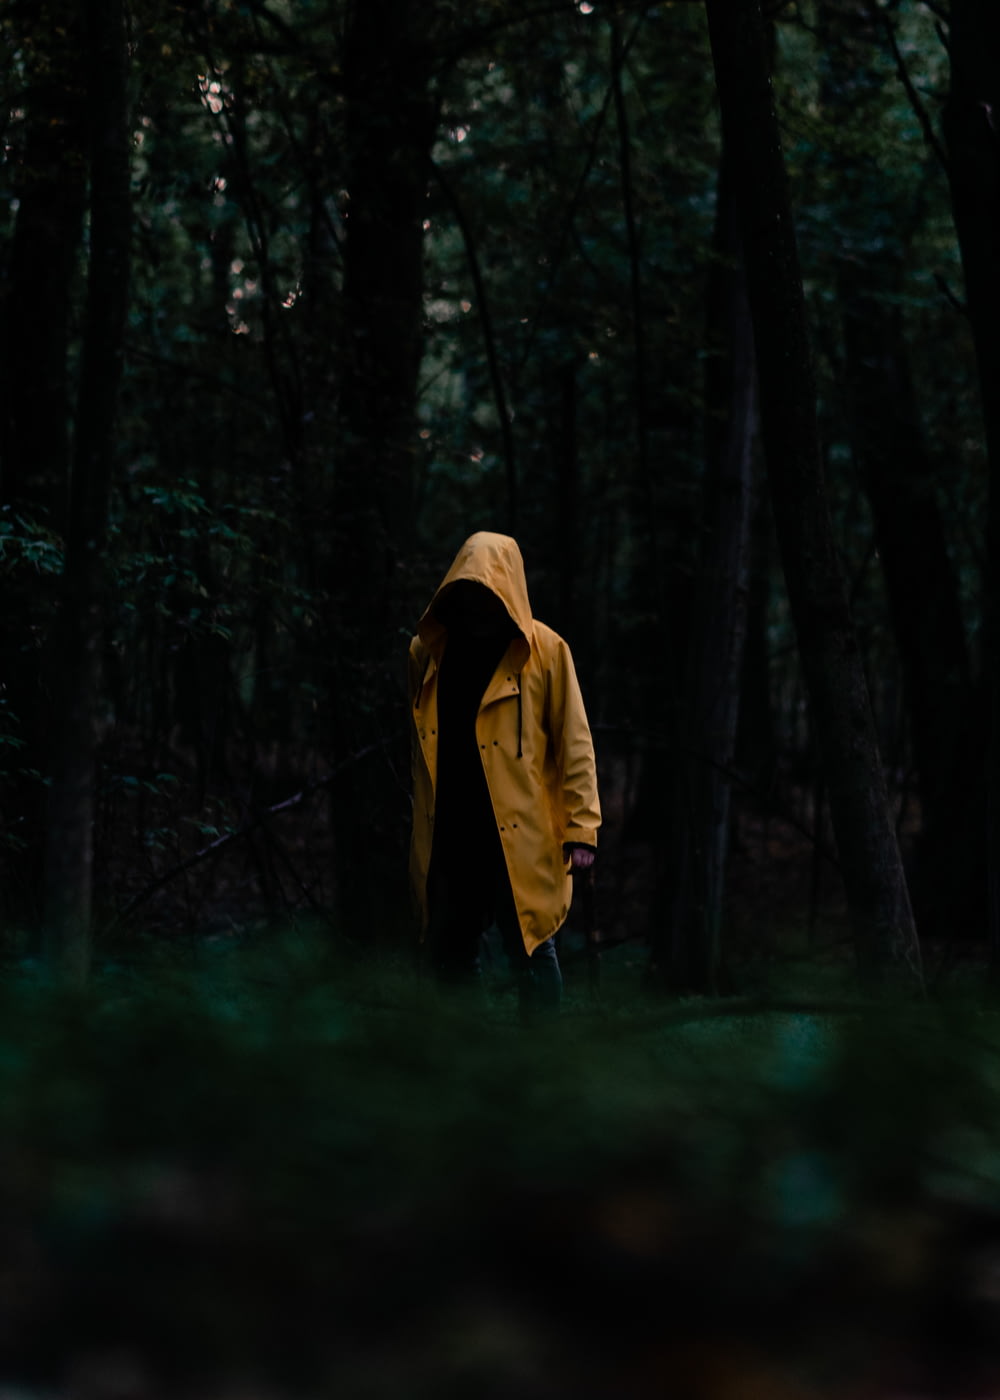 Persona in felpa con cappuccio gialla in piedi nei boschi